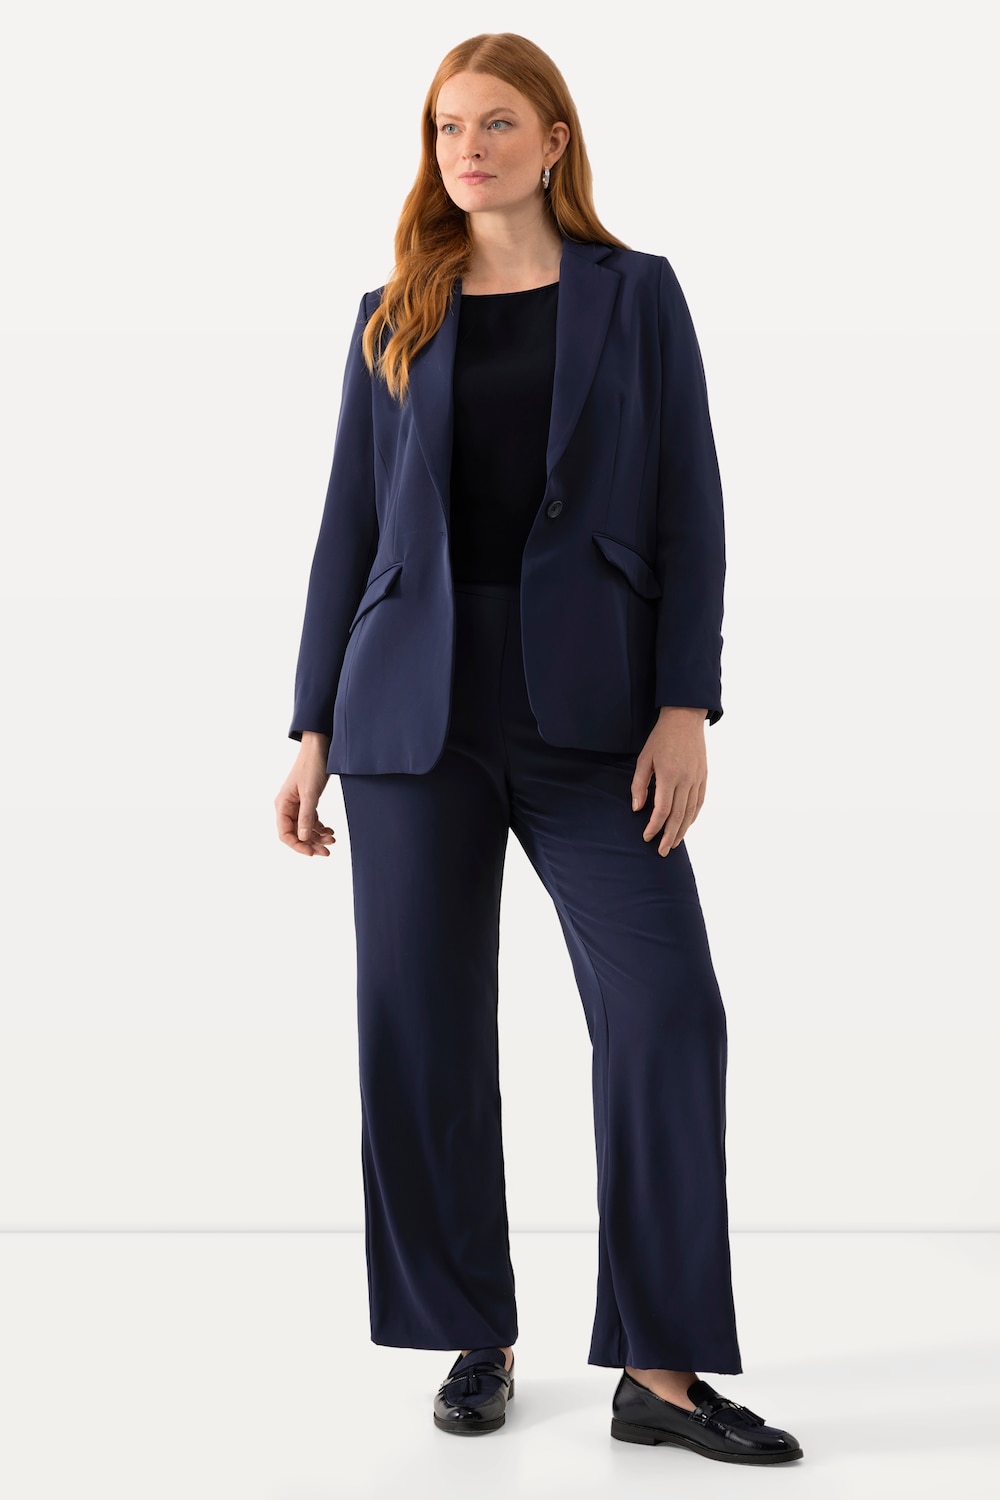 Große Größen Anzughose, Damen, blau, Größe: 54, Kunstseide/Polyester, Ulla Popken von Ulla Popken